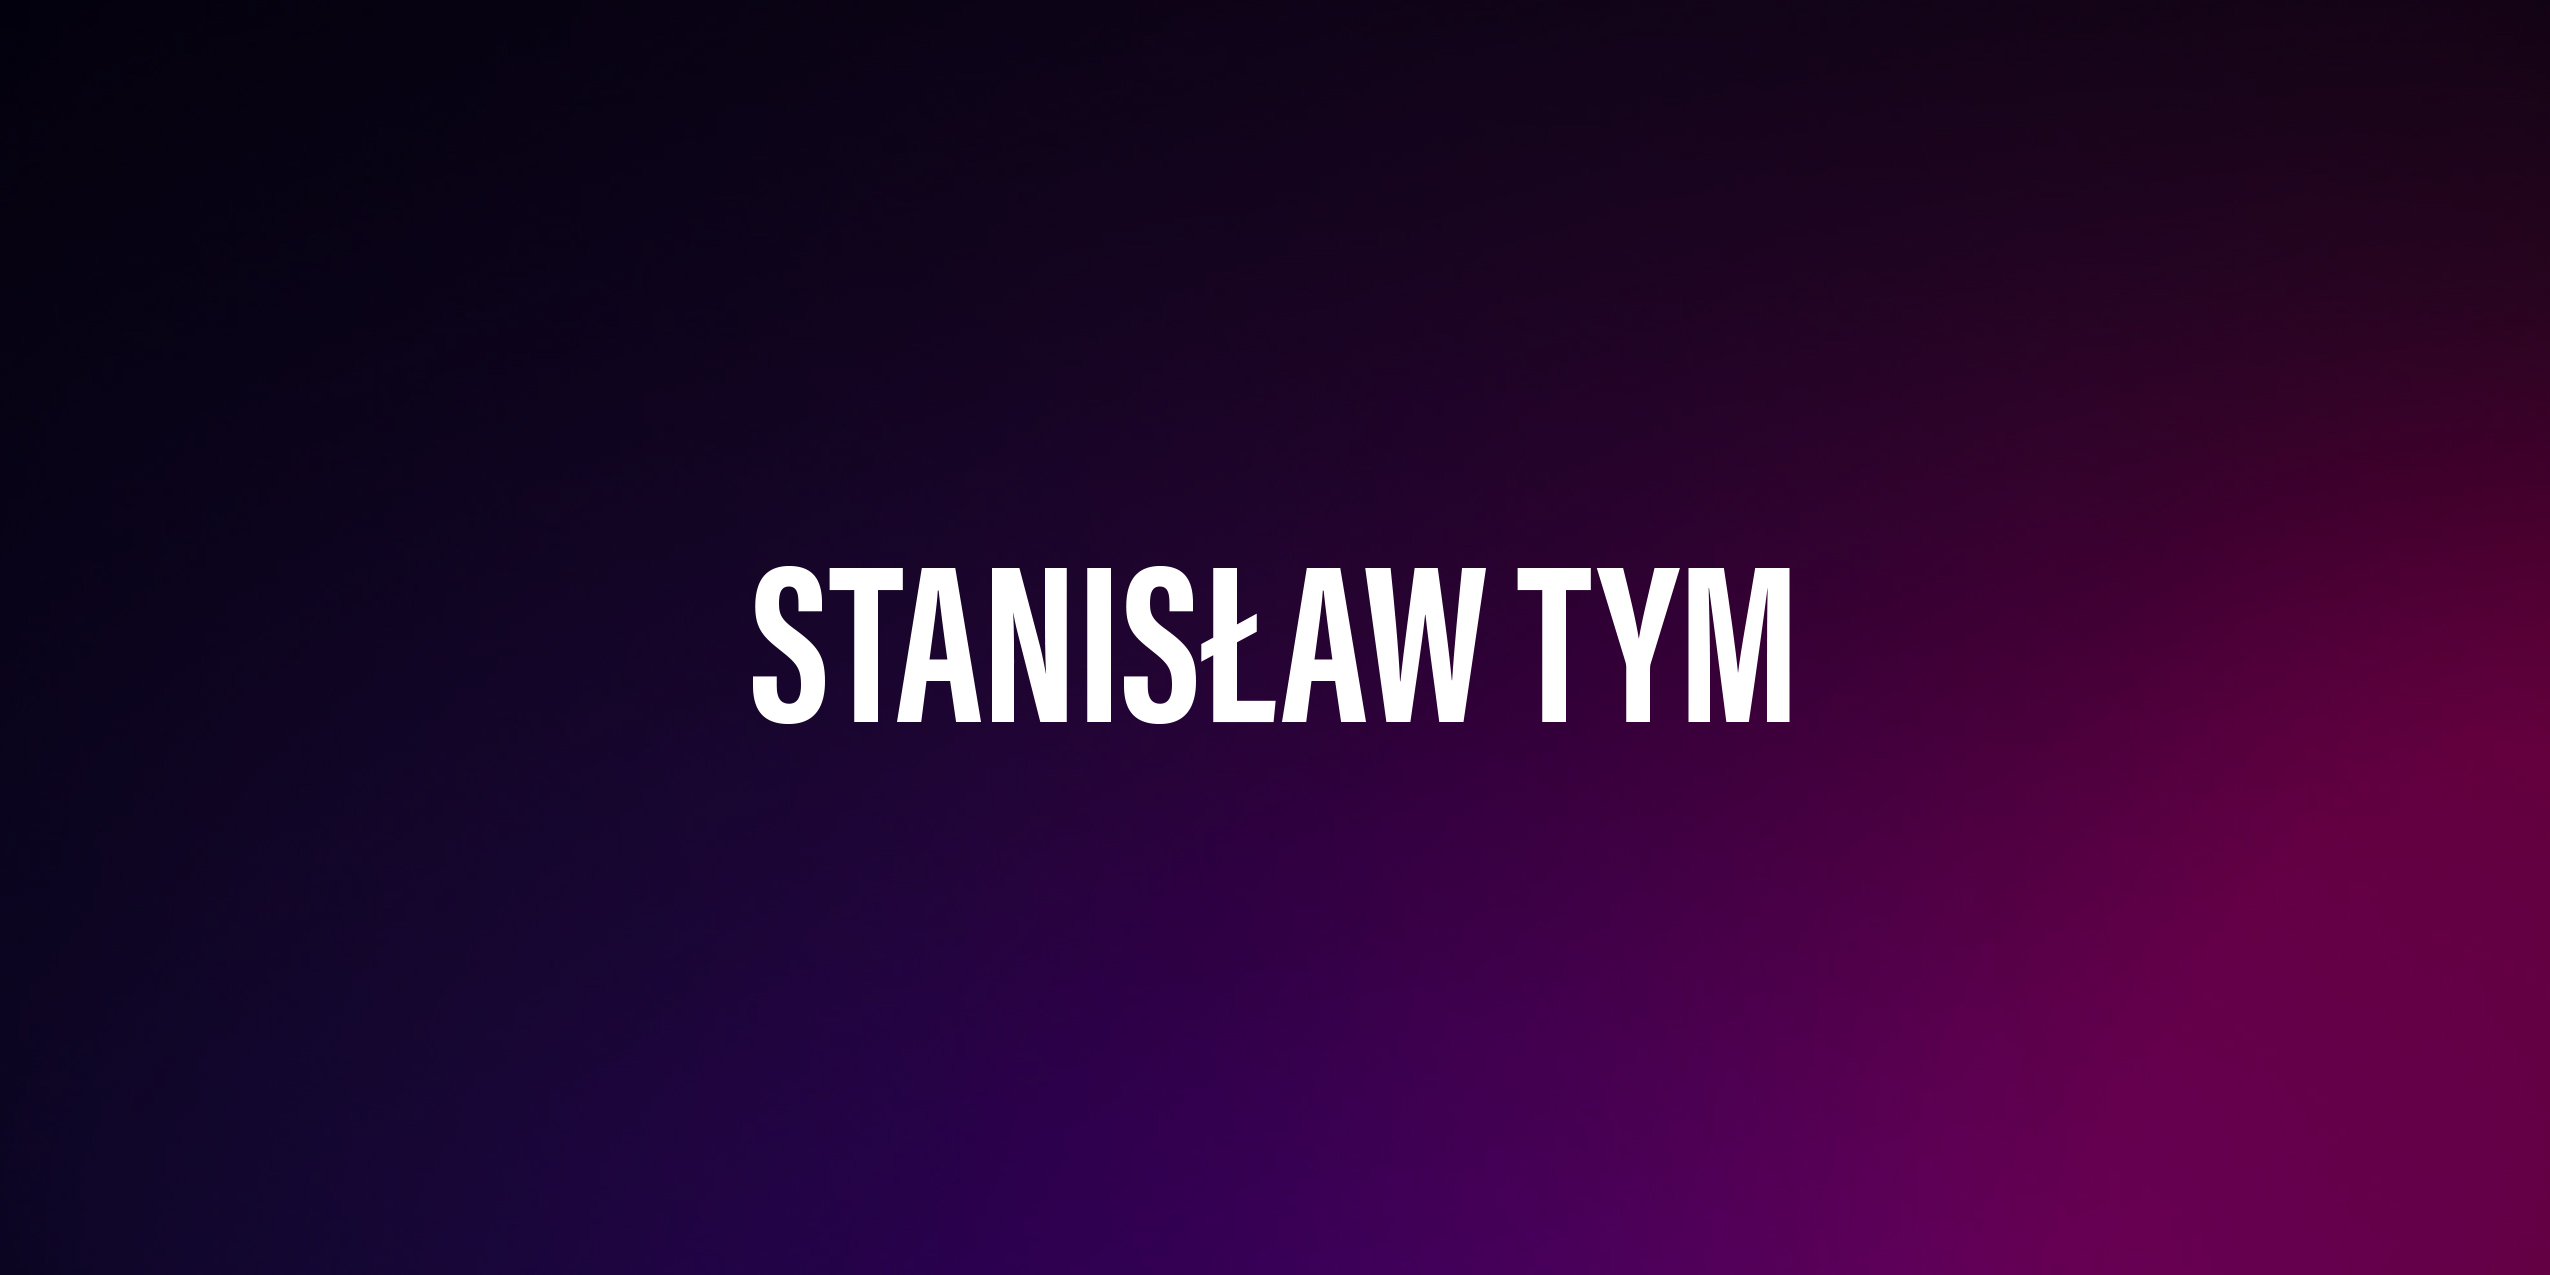 Stanisław Tym – życiorys i filmografia